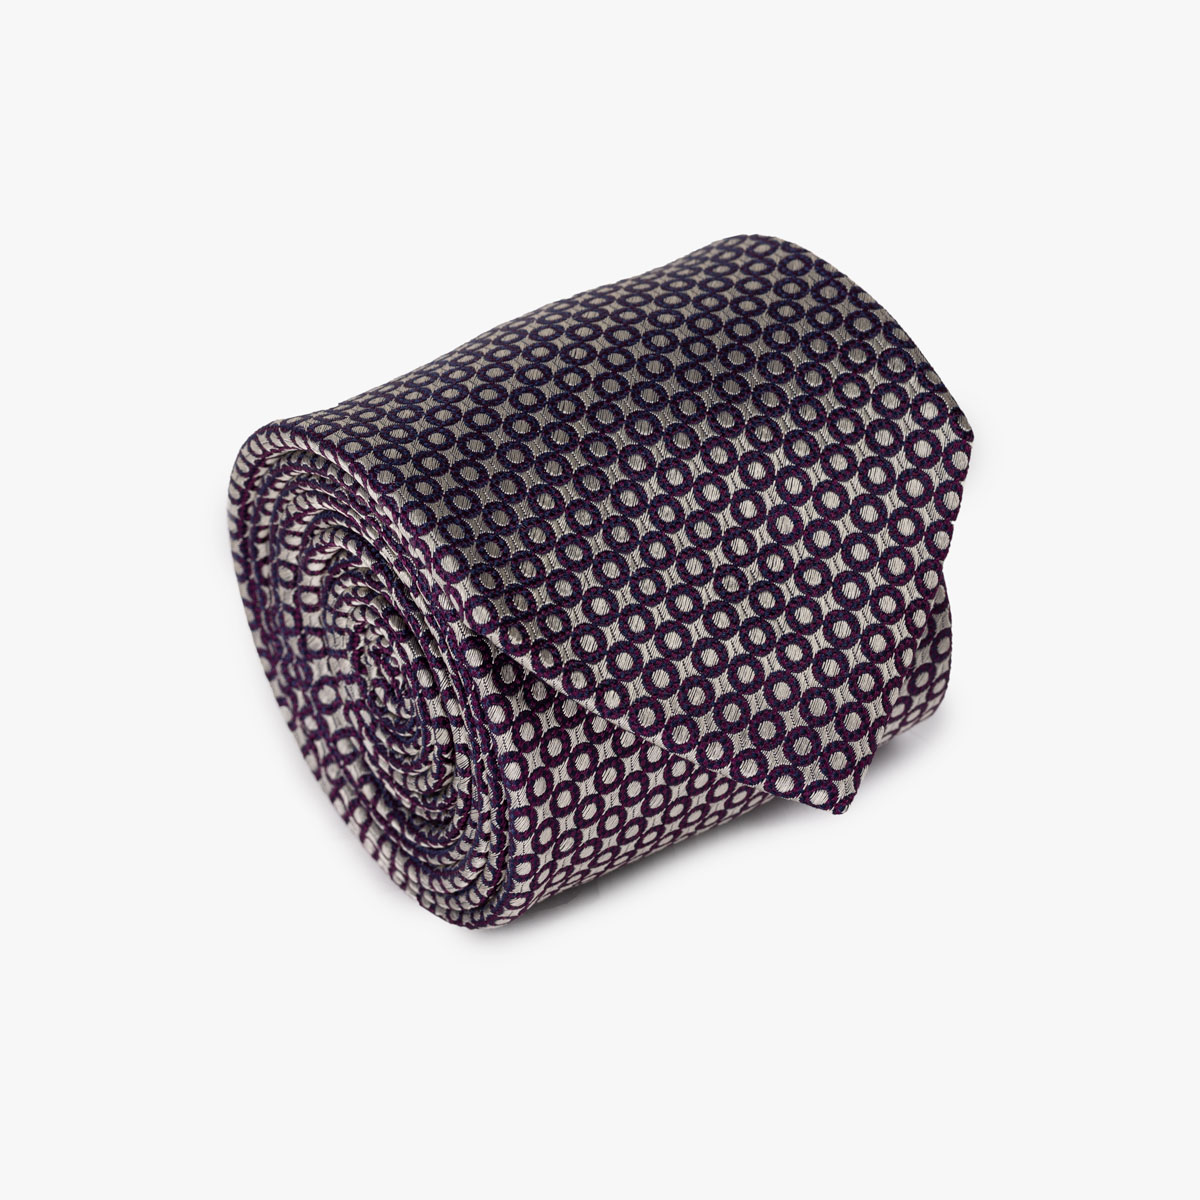 Krawatte mit geometrischem Muster in offwhite